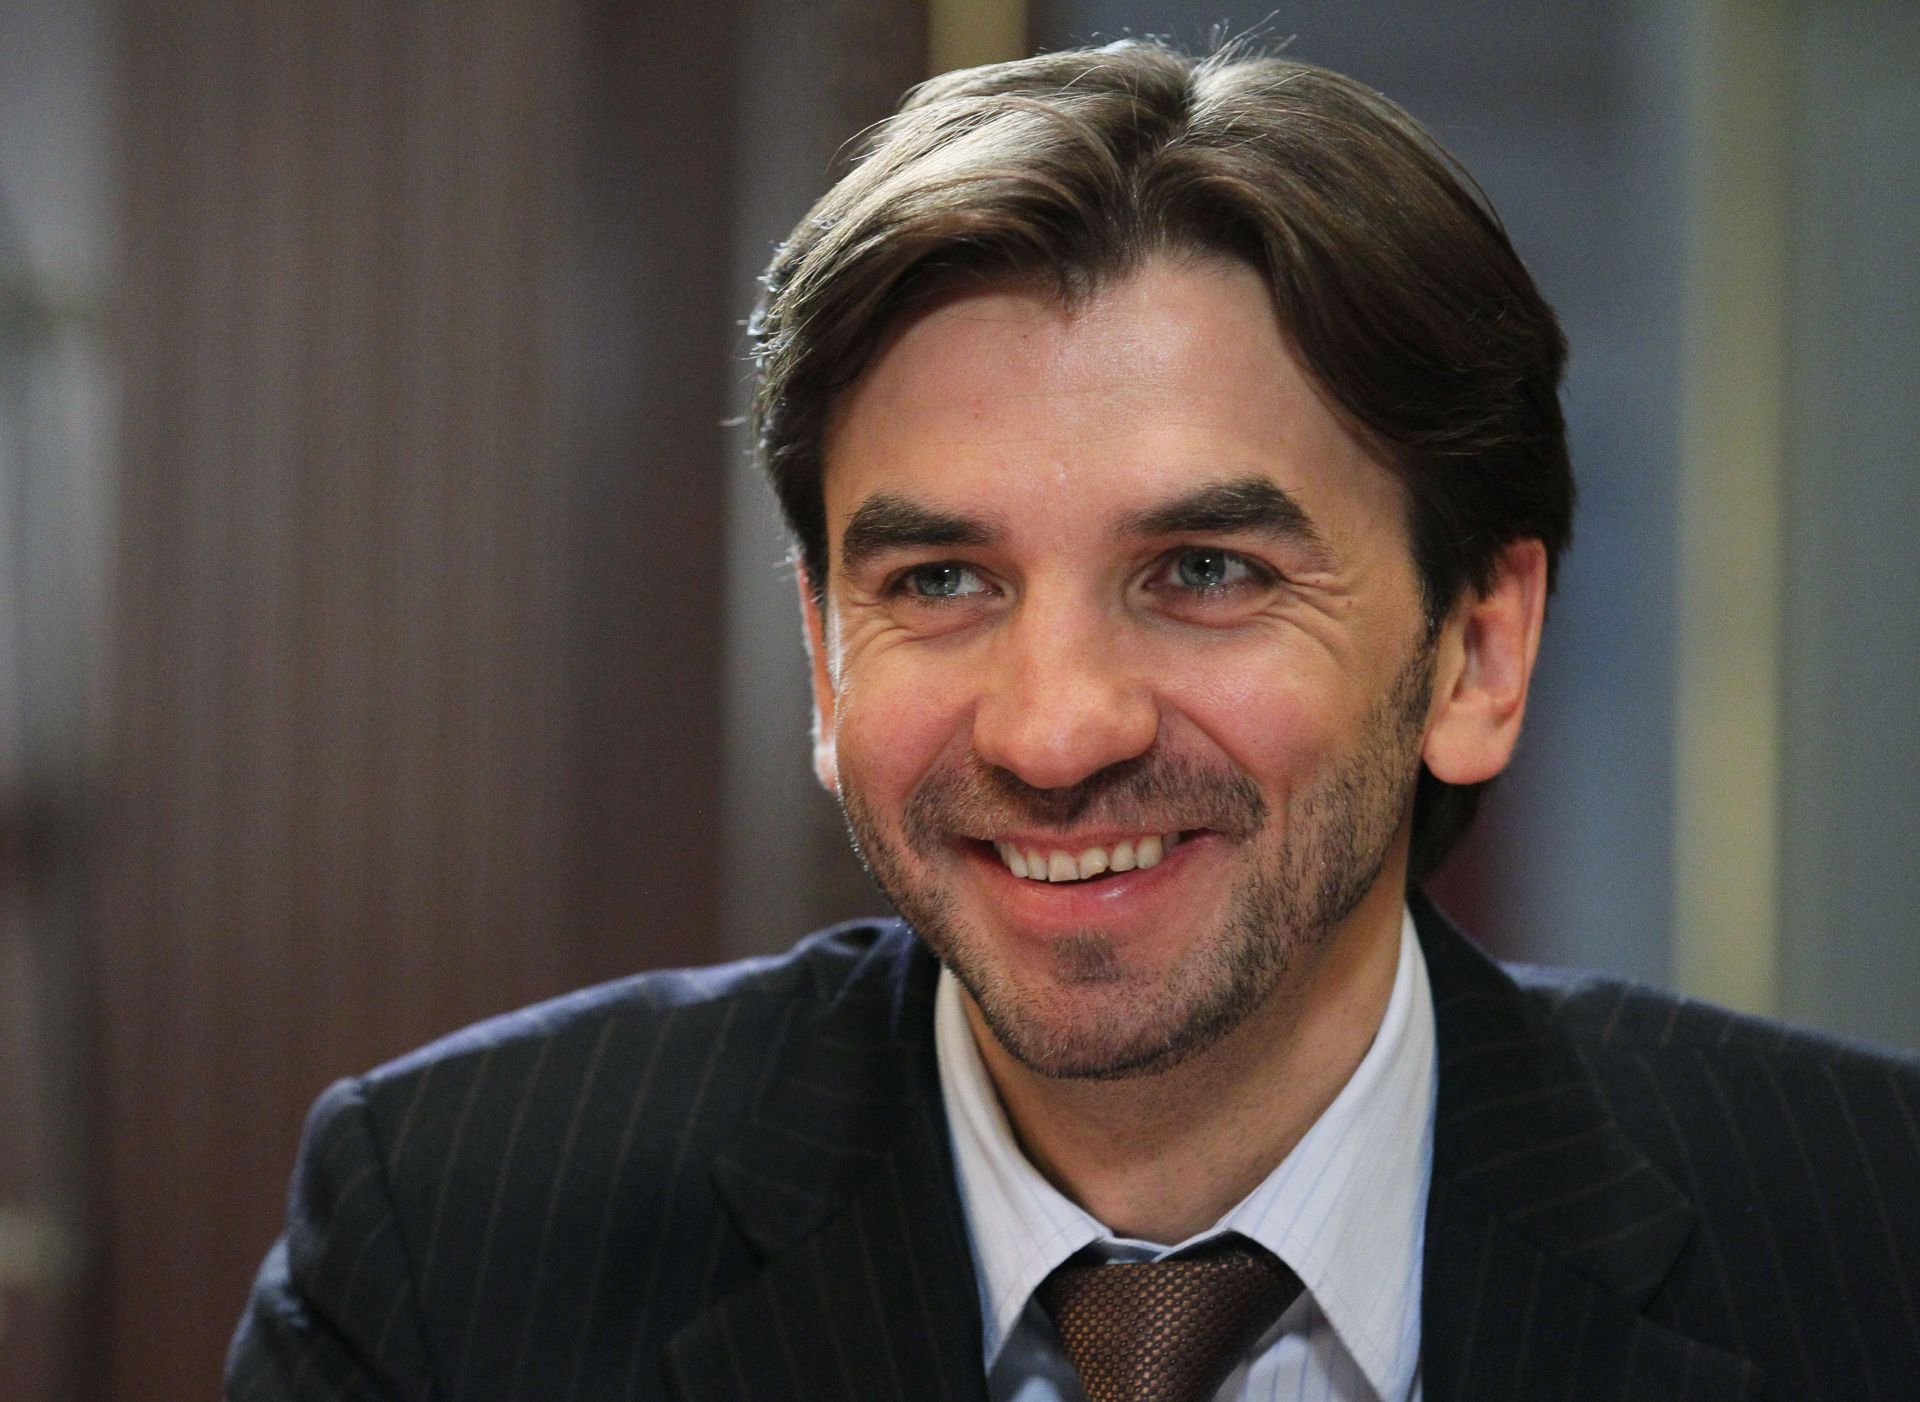 Михаил Абизов бе министър по координацията на дейността на отвореното правителство в периода 2012 - 2018 г. и отговаряше за информационните технологии 